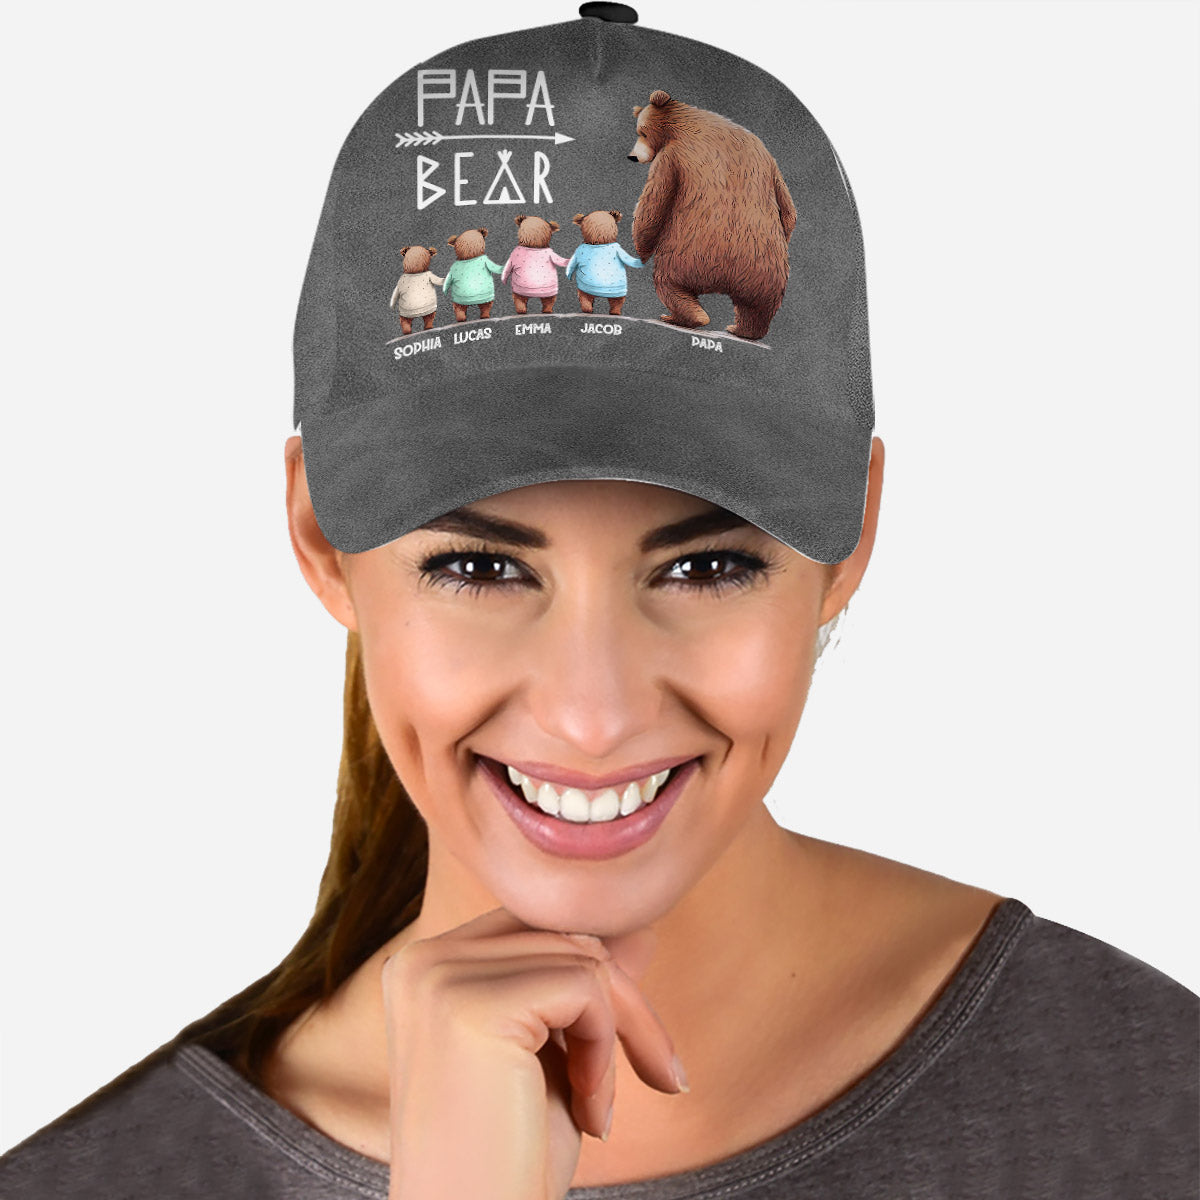 Papa Bear - Personalized Grandpa Classic Cap